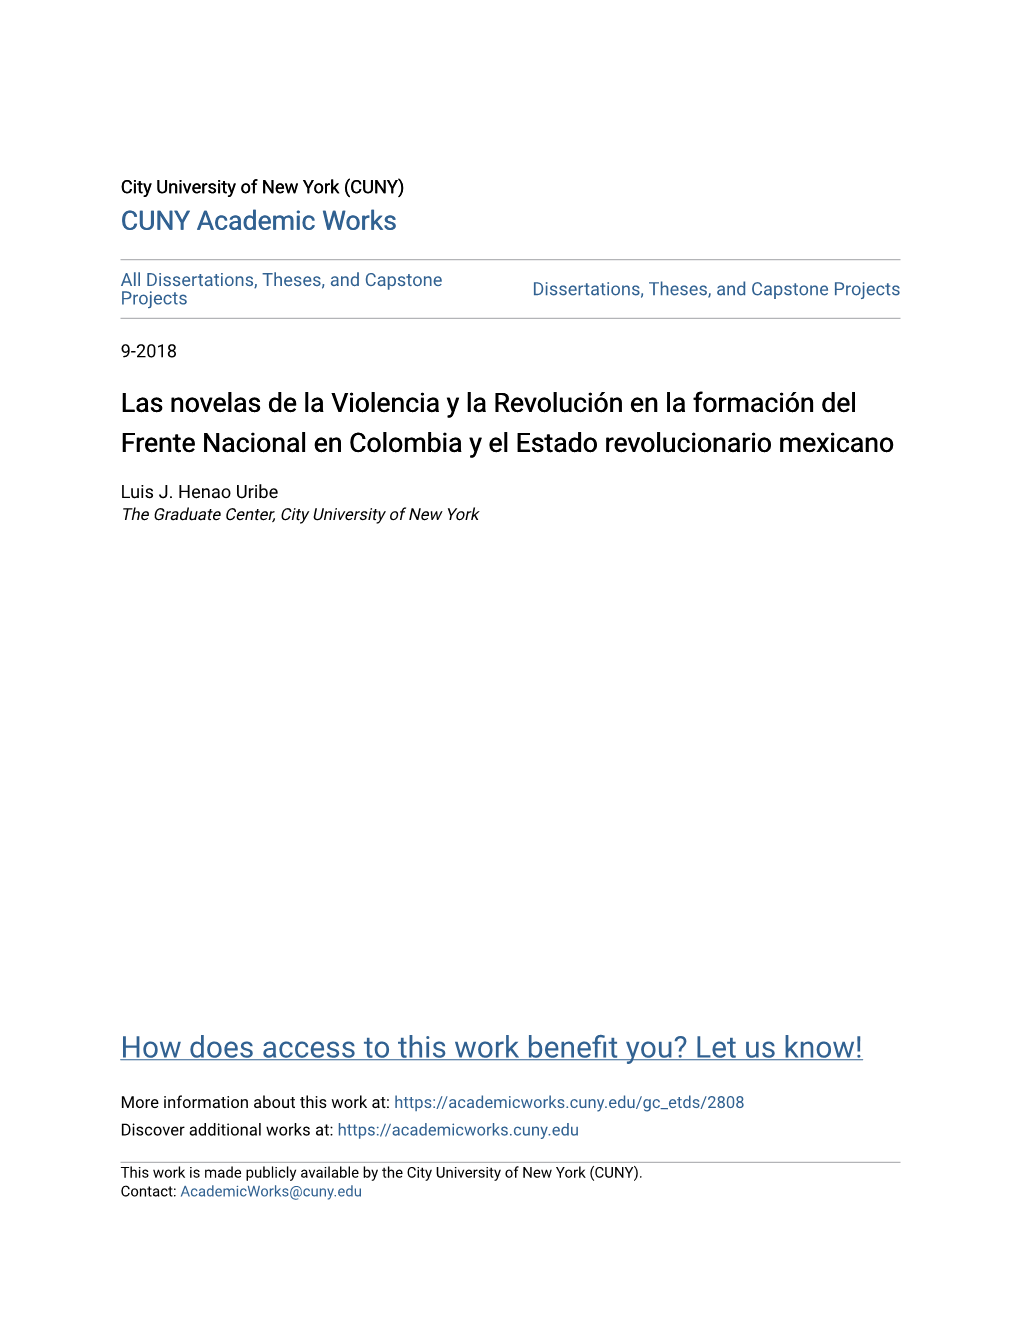 Las Novelas De La Violencia Y La Revolución En La Formación Del Frente Nacional En Colombia Y El Estado Revolucionario Mexicano